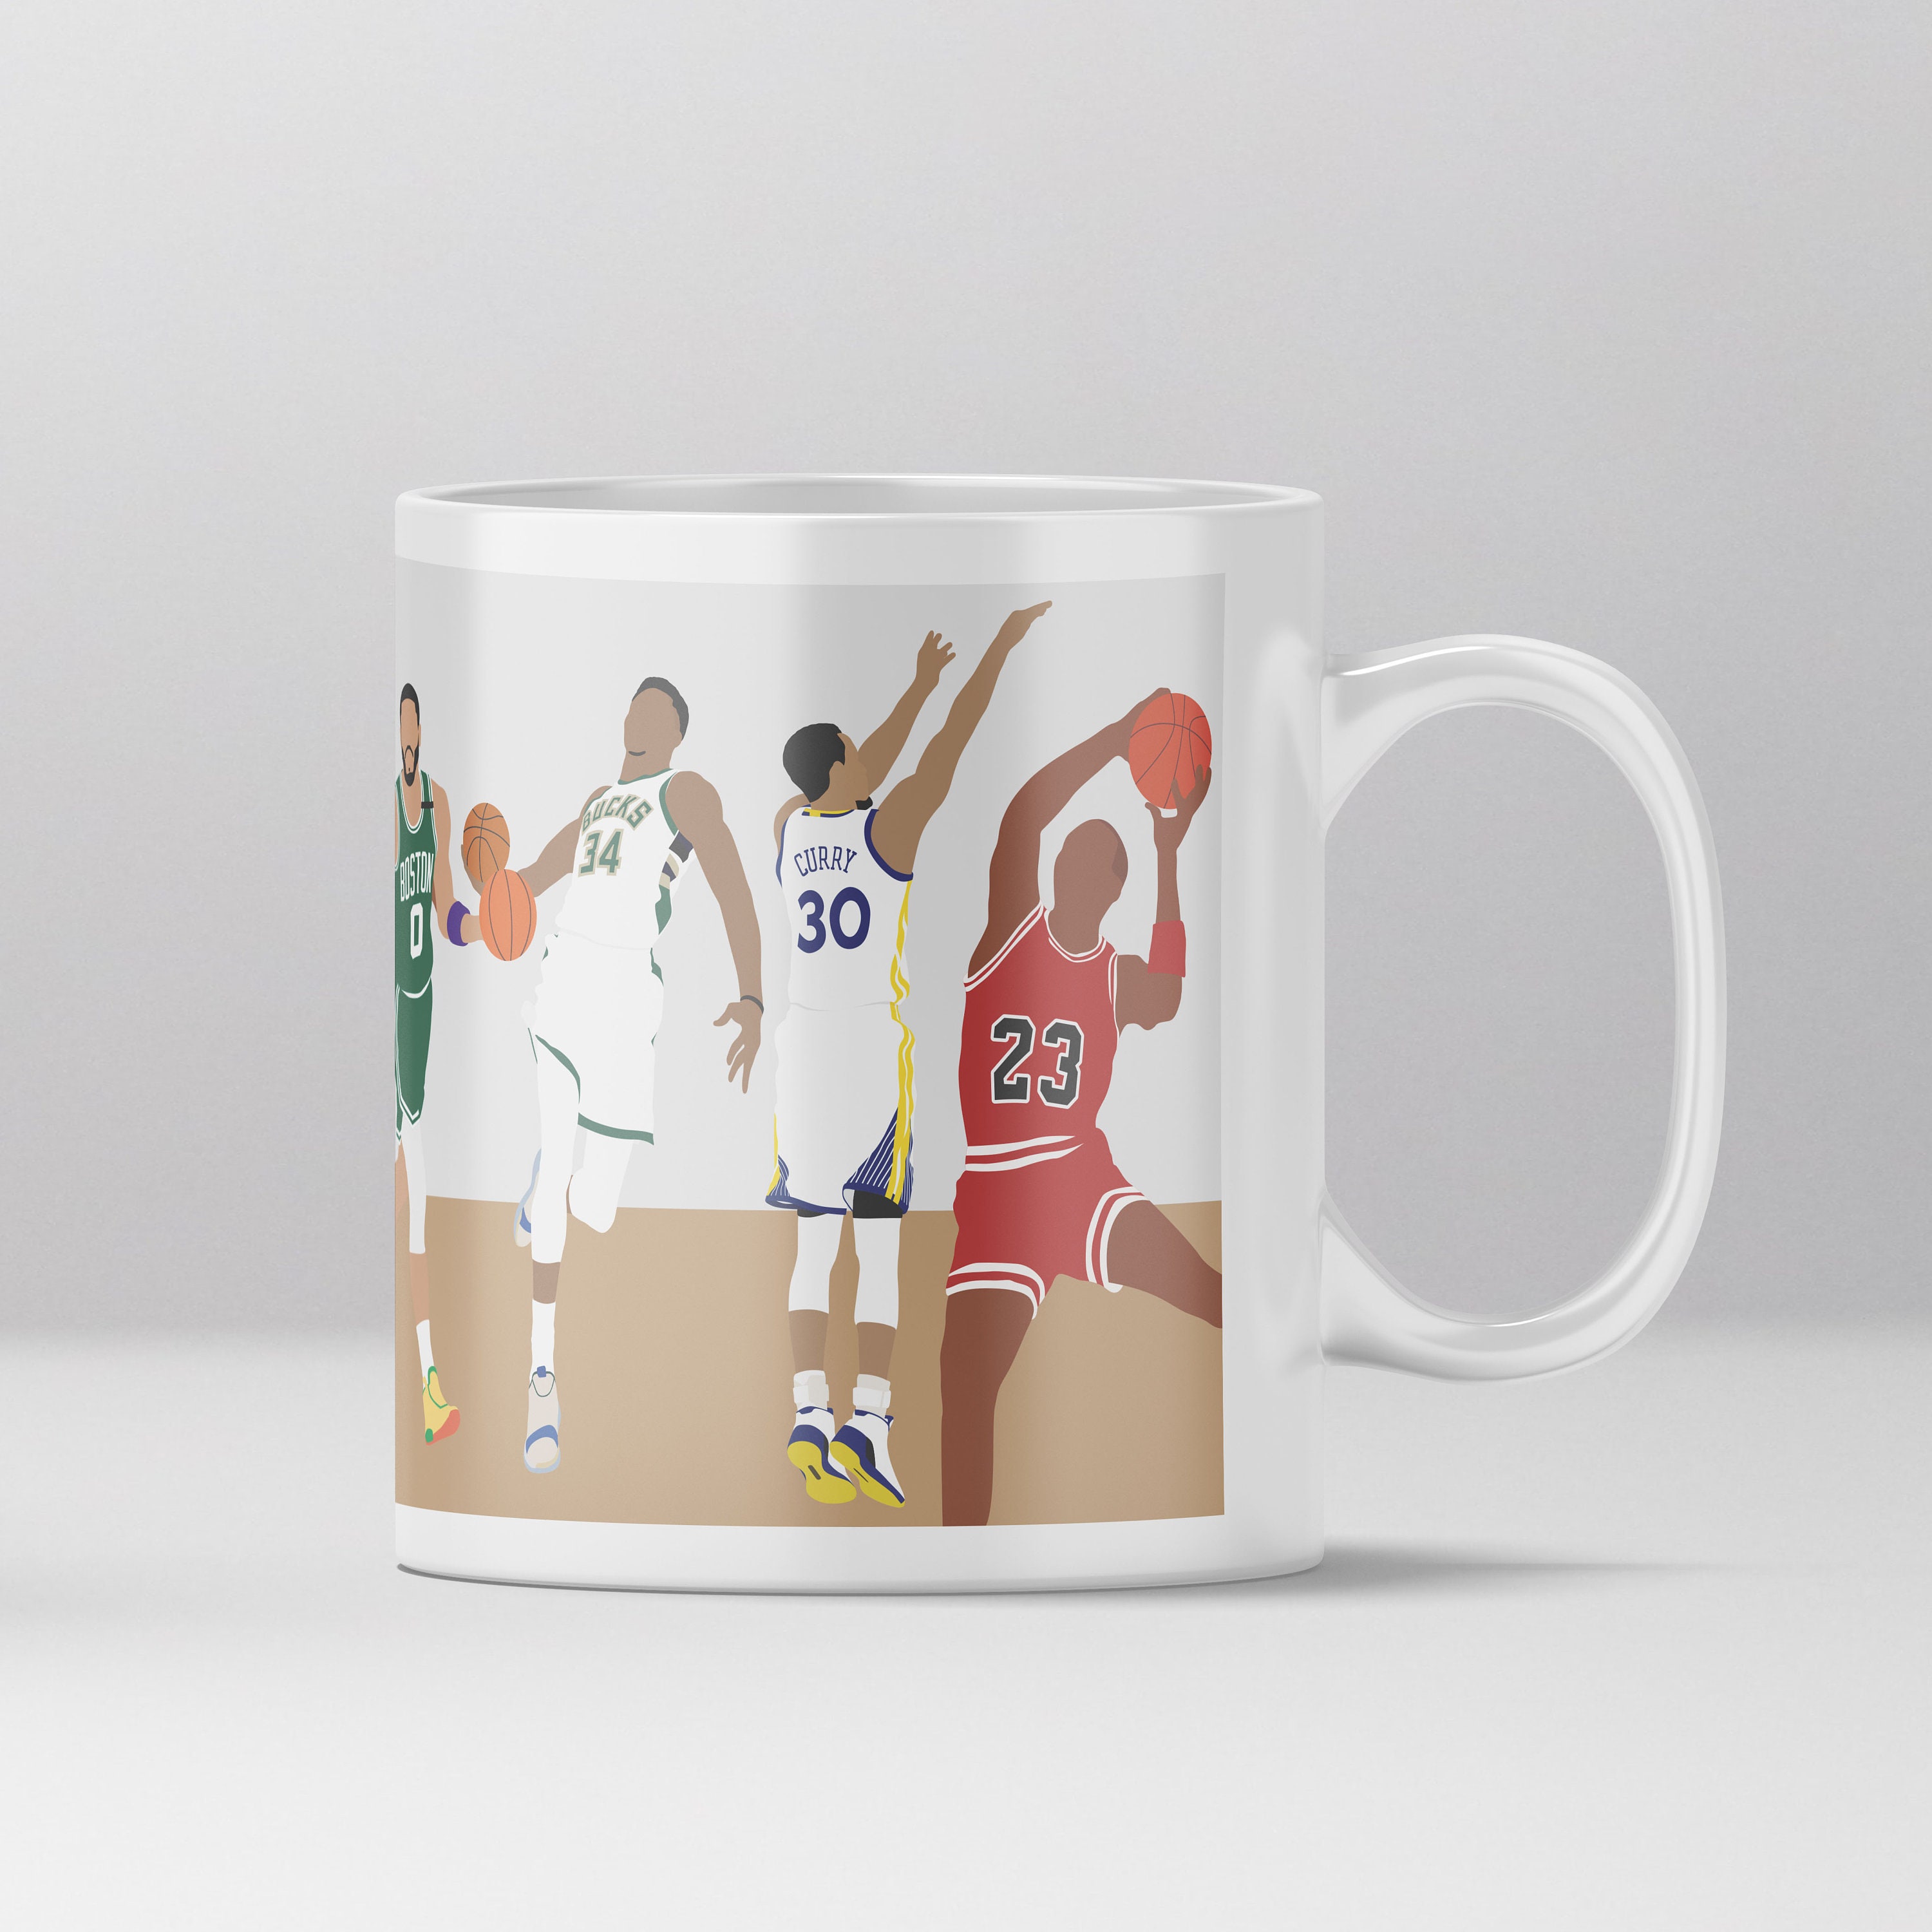 Discover Basketball Mug, Funny Basketball Mug